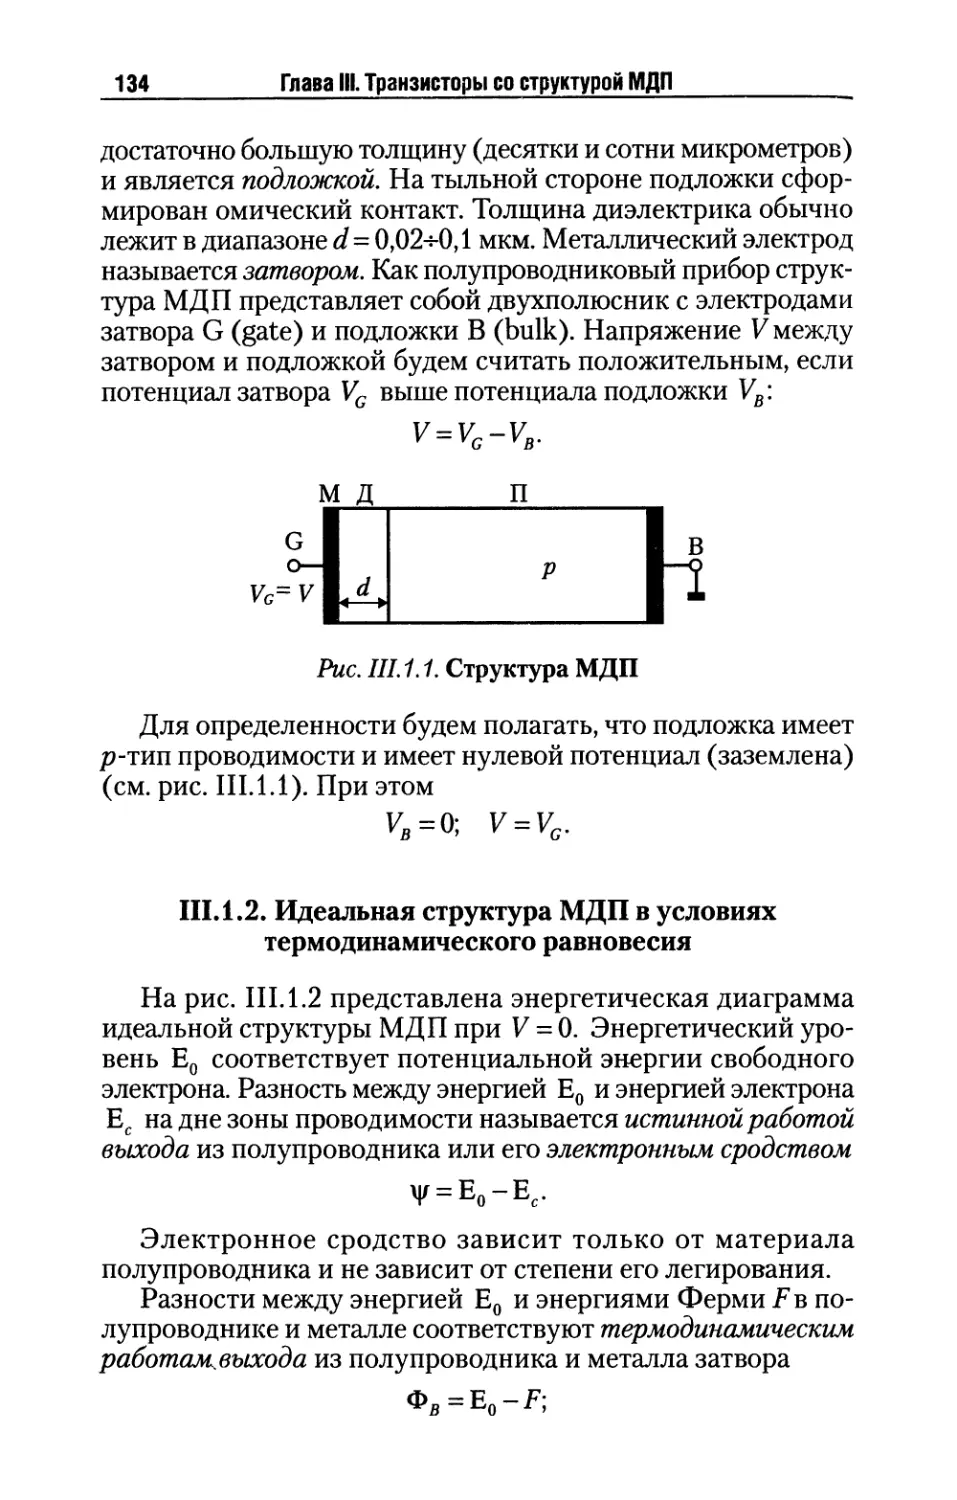 III.1.2. Идеальная структура МДП в условиях термодинамического равновесия